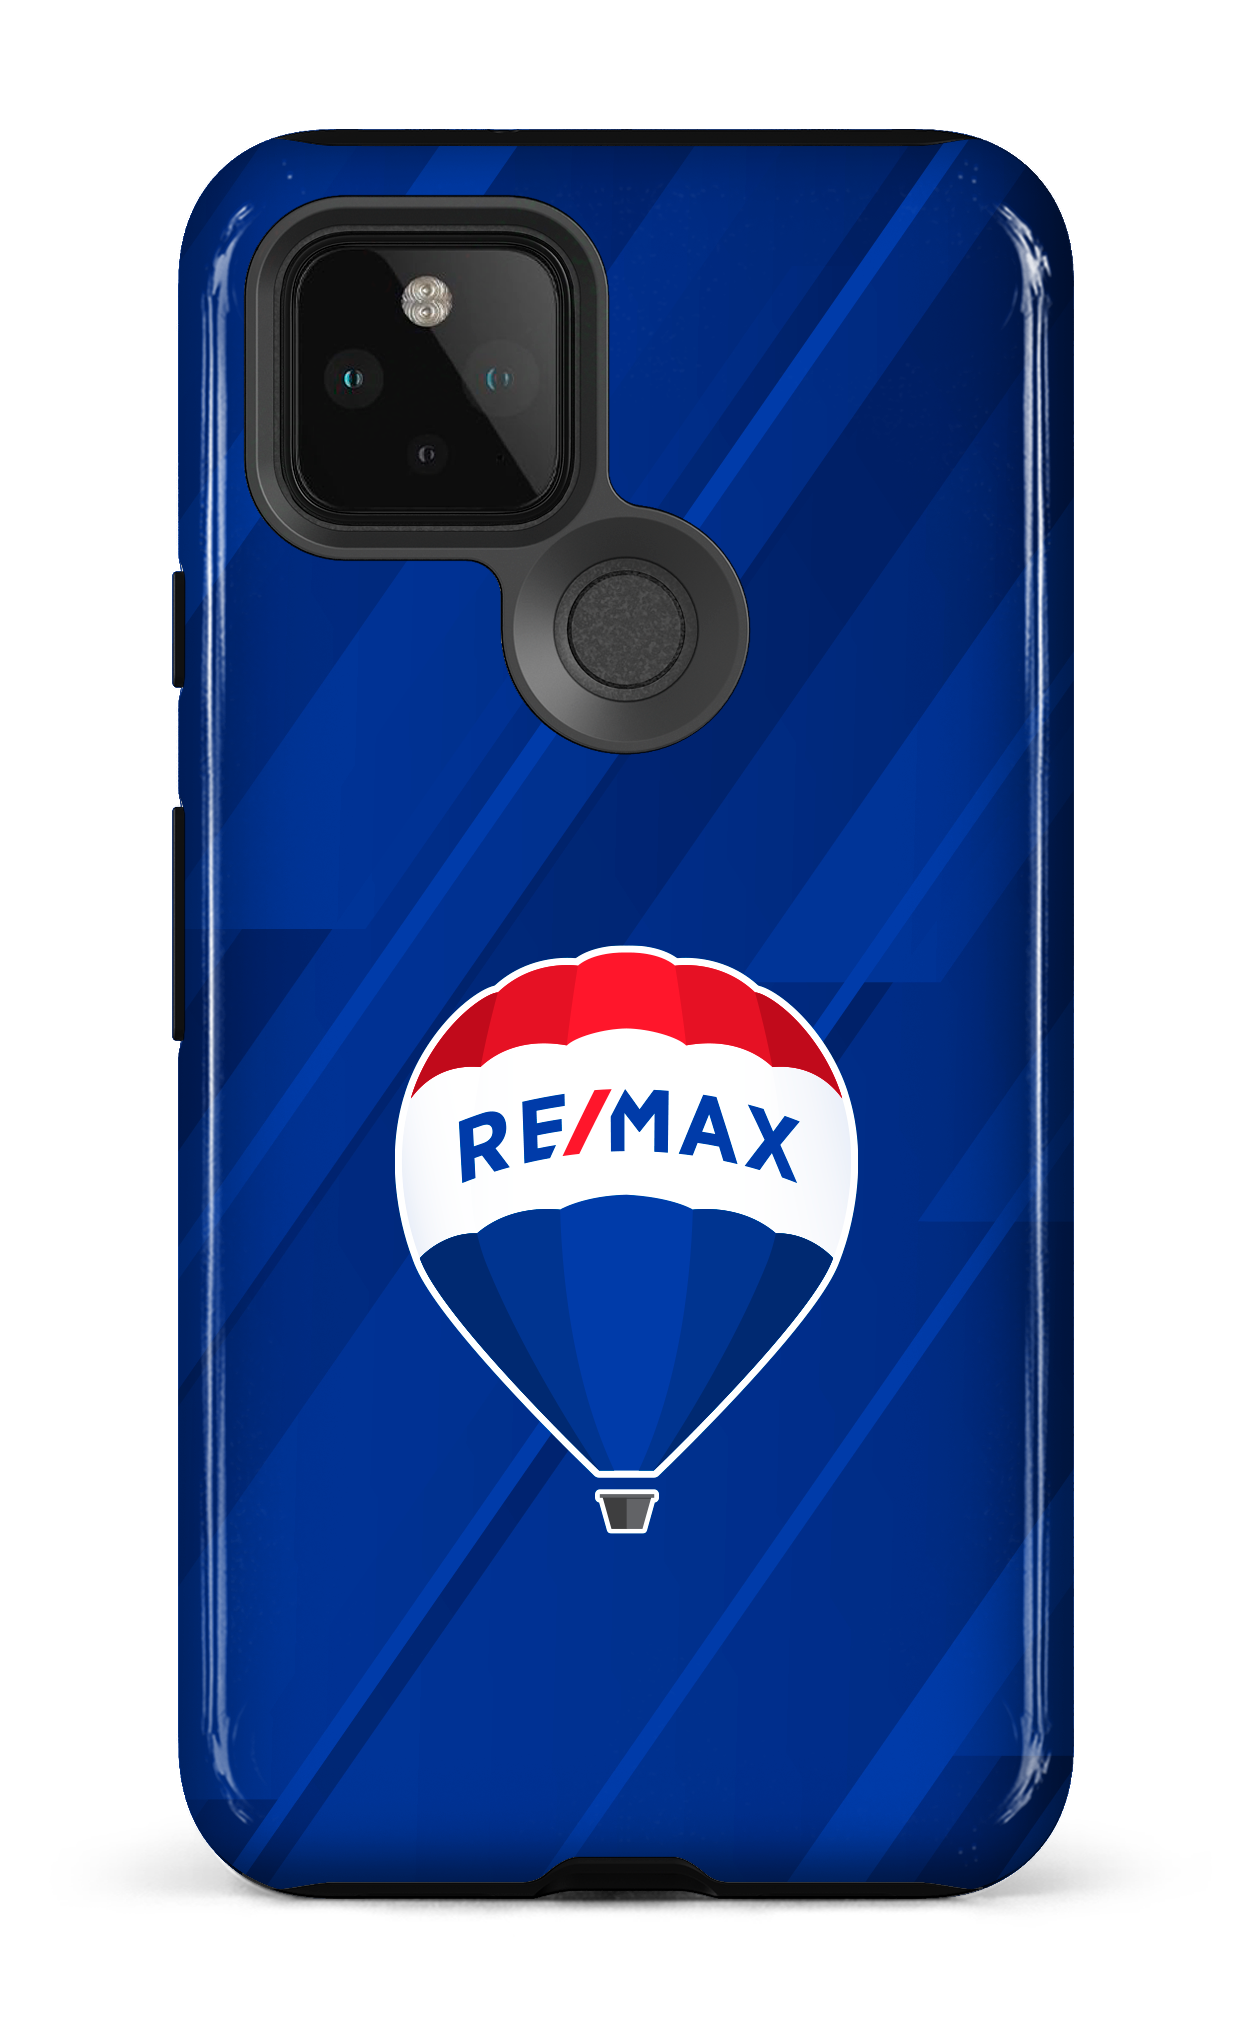 Remax Bleu - Google Pixel 5